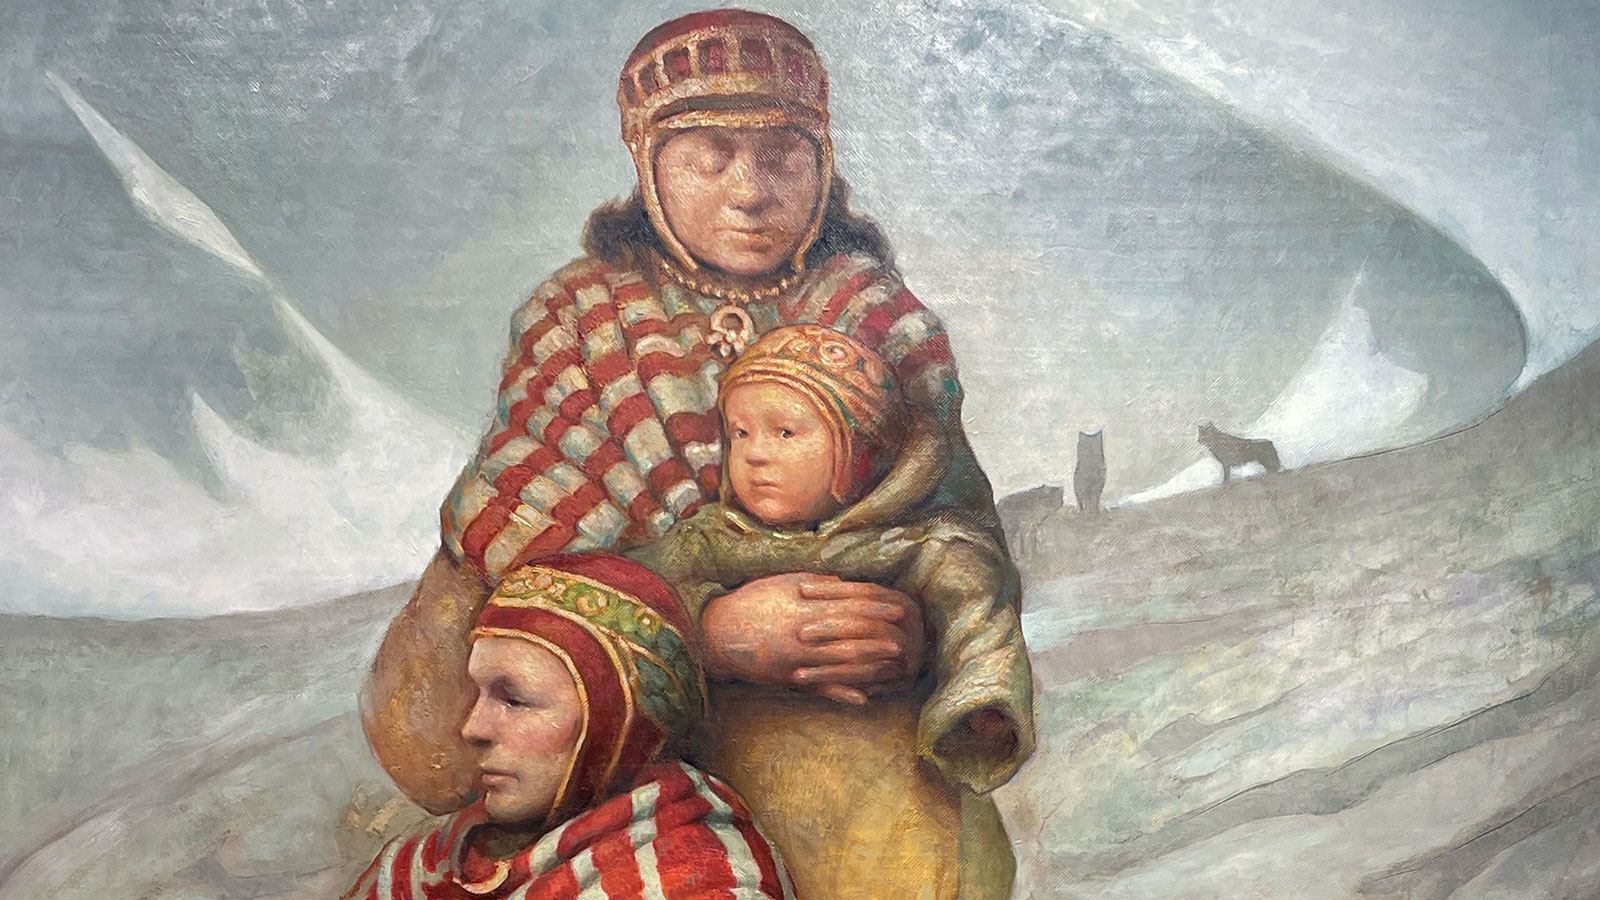 Detalj av målningen "vargdimma". En sittande man och en stående kvinna bakom, hon håller ett barn. Alla i nordsamiska dräkter.  Bakom dem en karg, vintrig, grådisig fjällvärld, långt bort skymtar några vargars siluetter. 